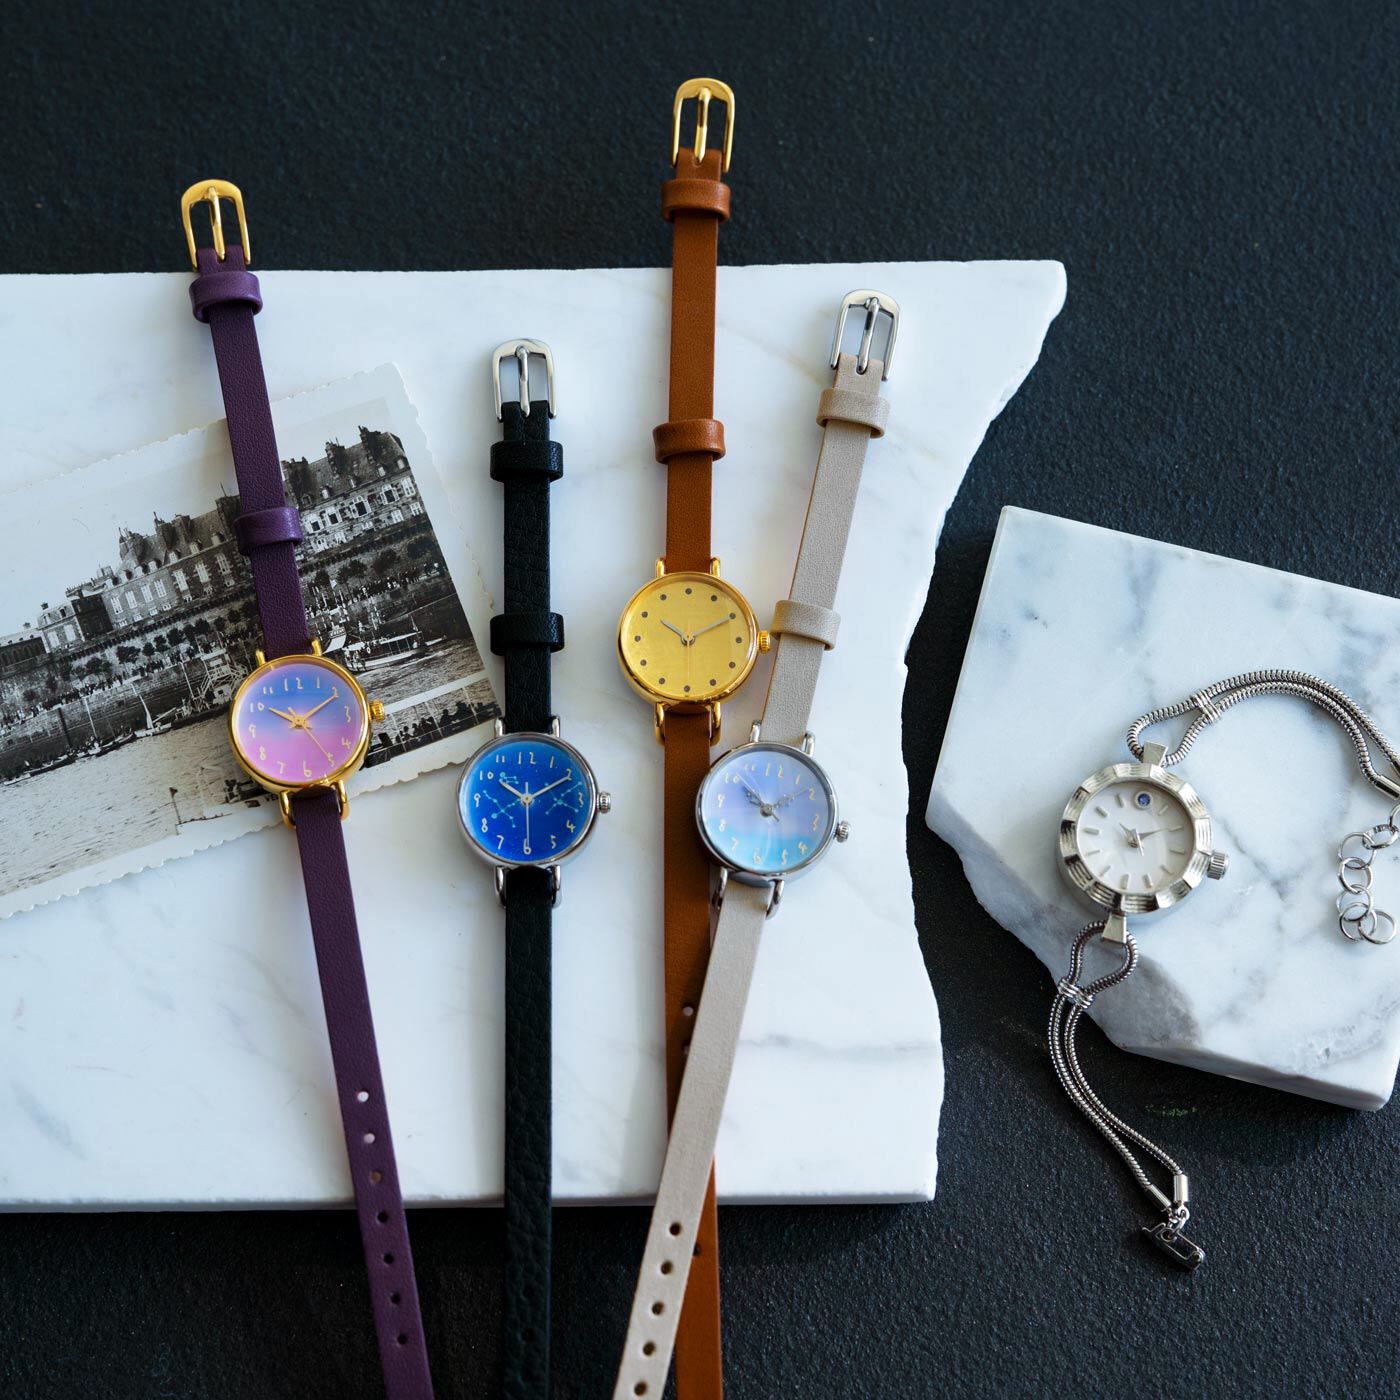 ＆Stories|金沢の時計職人が手掛けた　朝焼けに見惚れる腕時計〈マルベリーパープル〉|この夏登場する腕時計は、どれも洗練された美しい仕上がり。あなたにふさわしい逸品を見つけてくださいね。